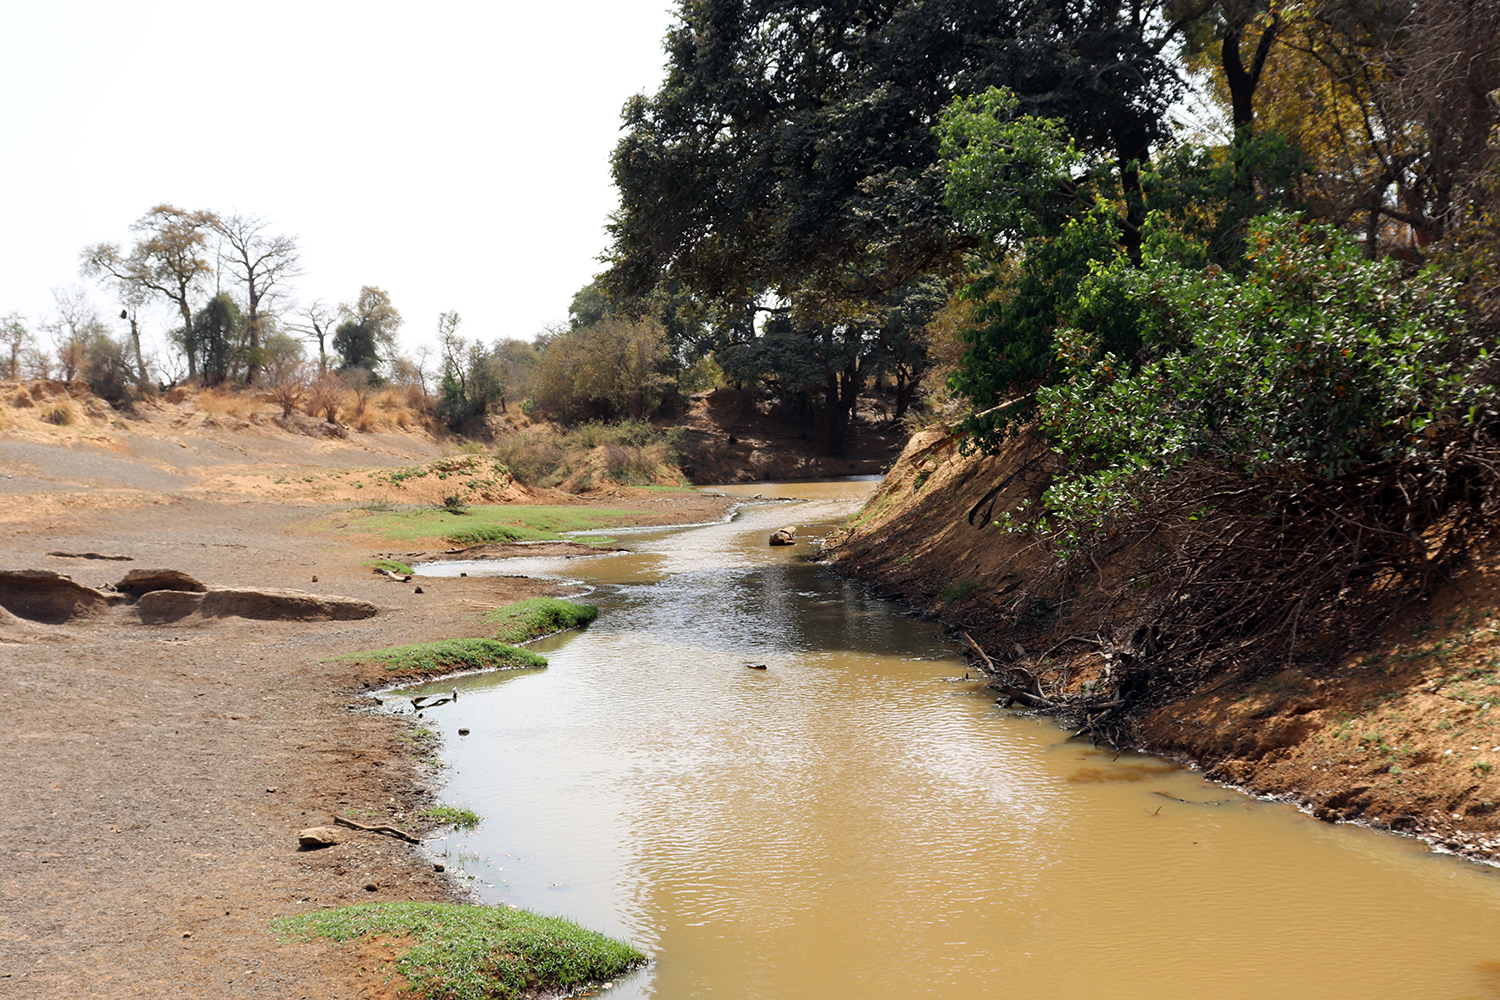 La rivière Pendjari marque la frontière entre le Burkina Fasso (rive gauche de la rivière) et le Bénin (rive droite).